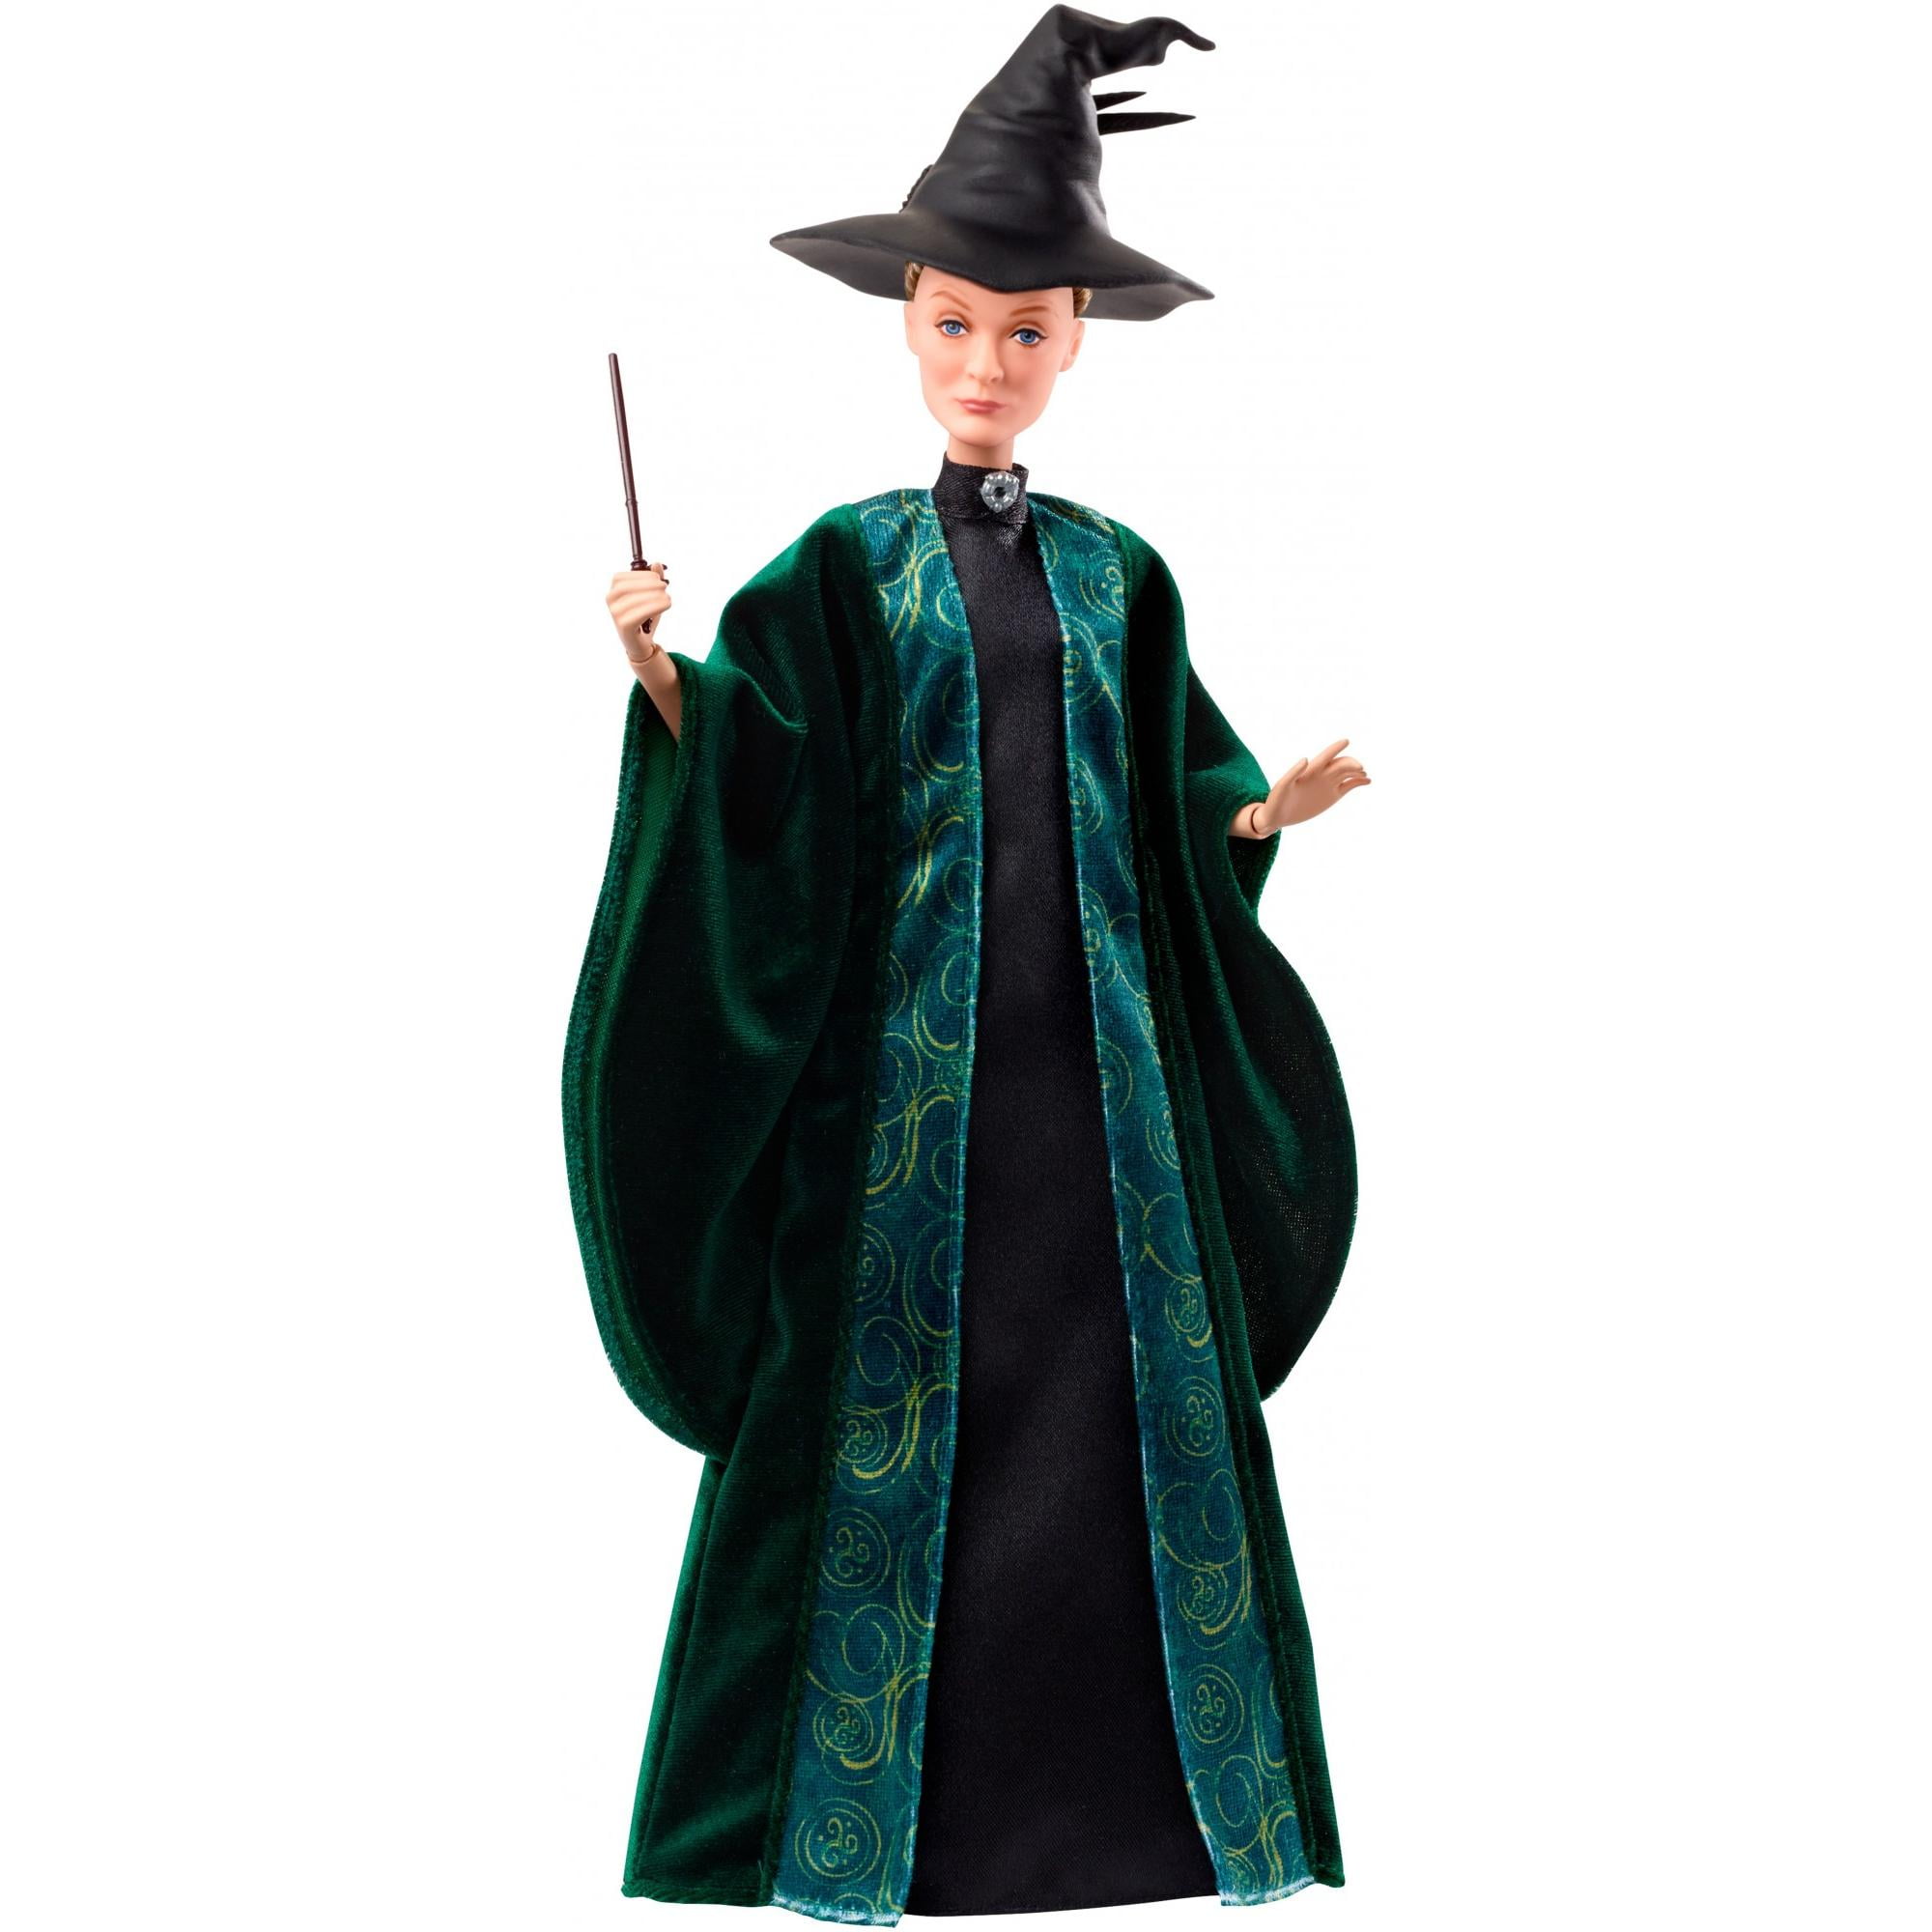 Professor Minerva McGonagall Character Wand Official Warner Bros Prop Replica 